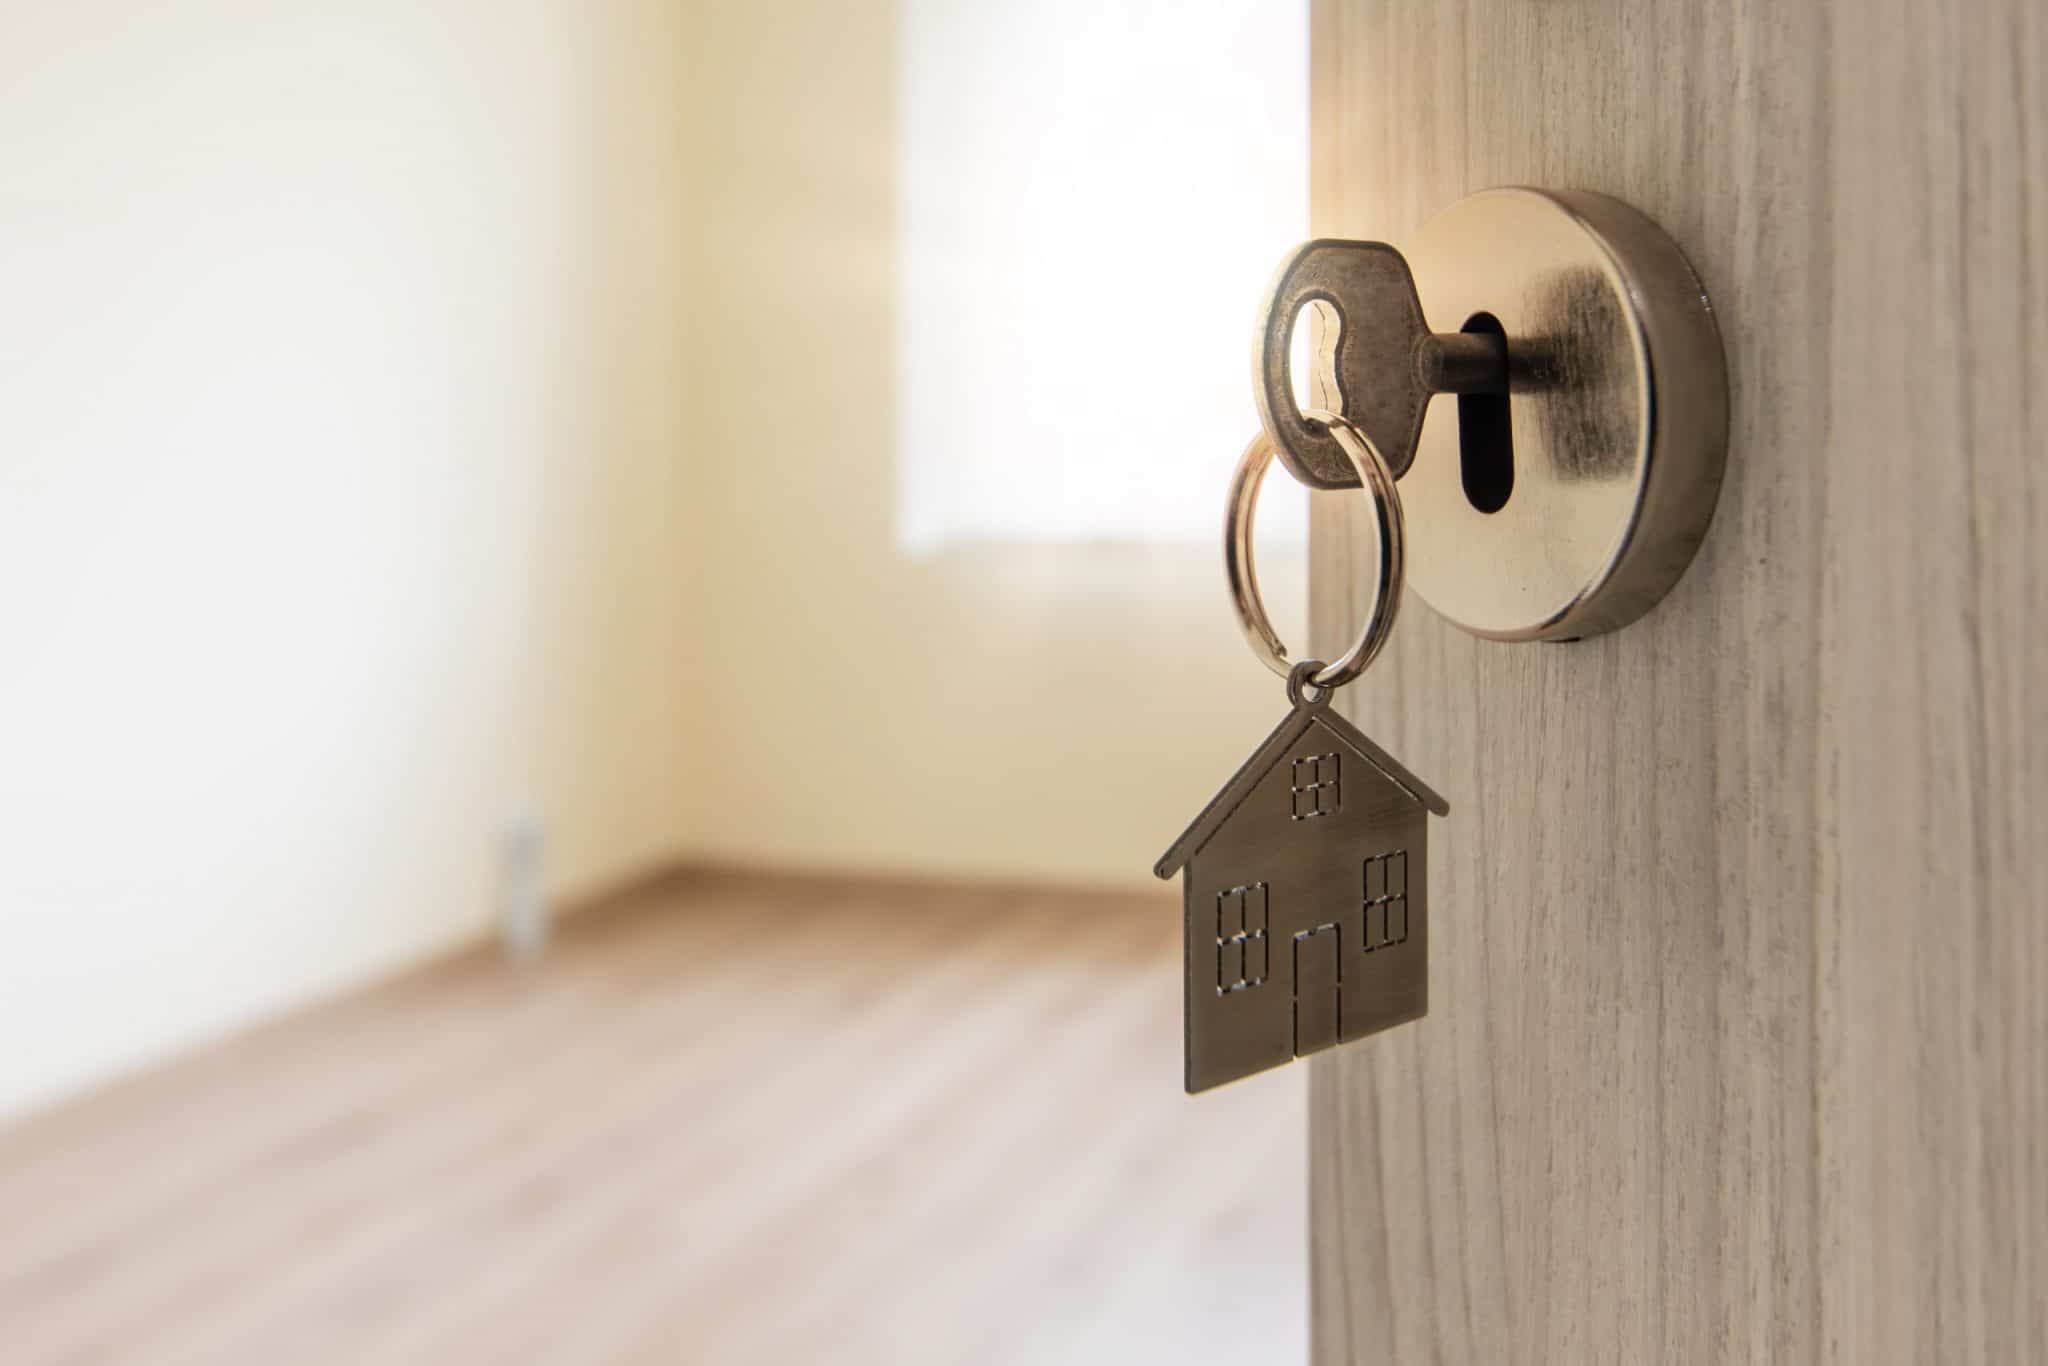 Immobilier: Comment choisir des locataires de confiance selon Gilles Cheval.